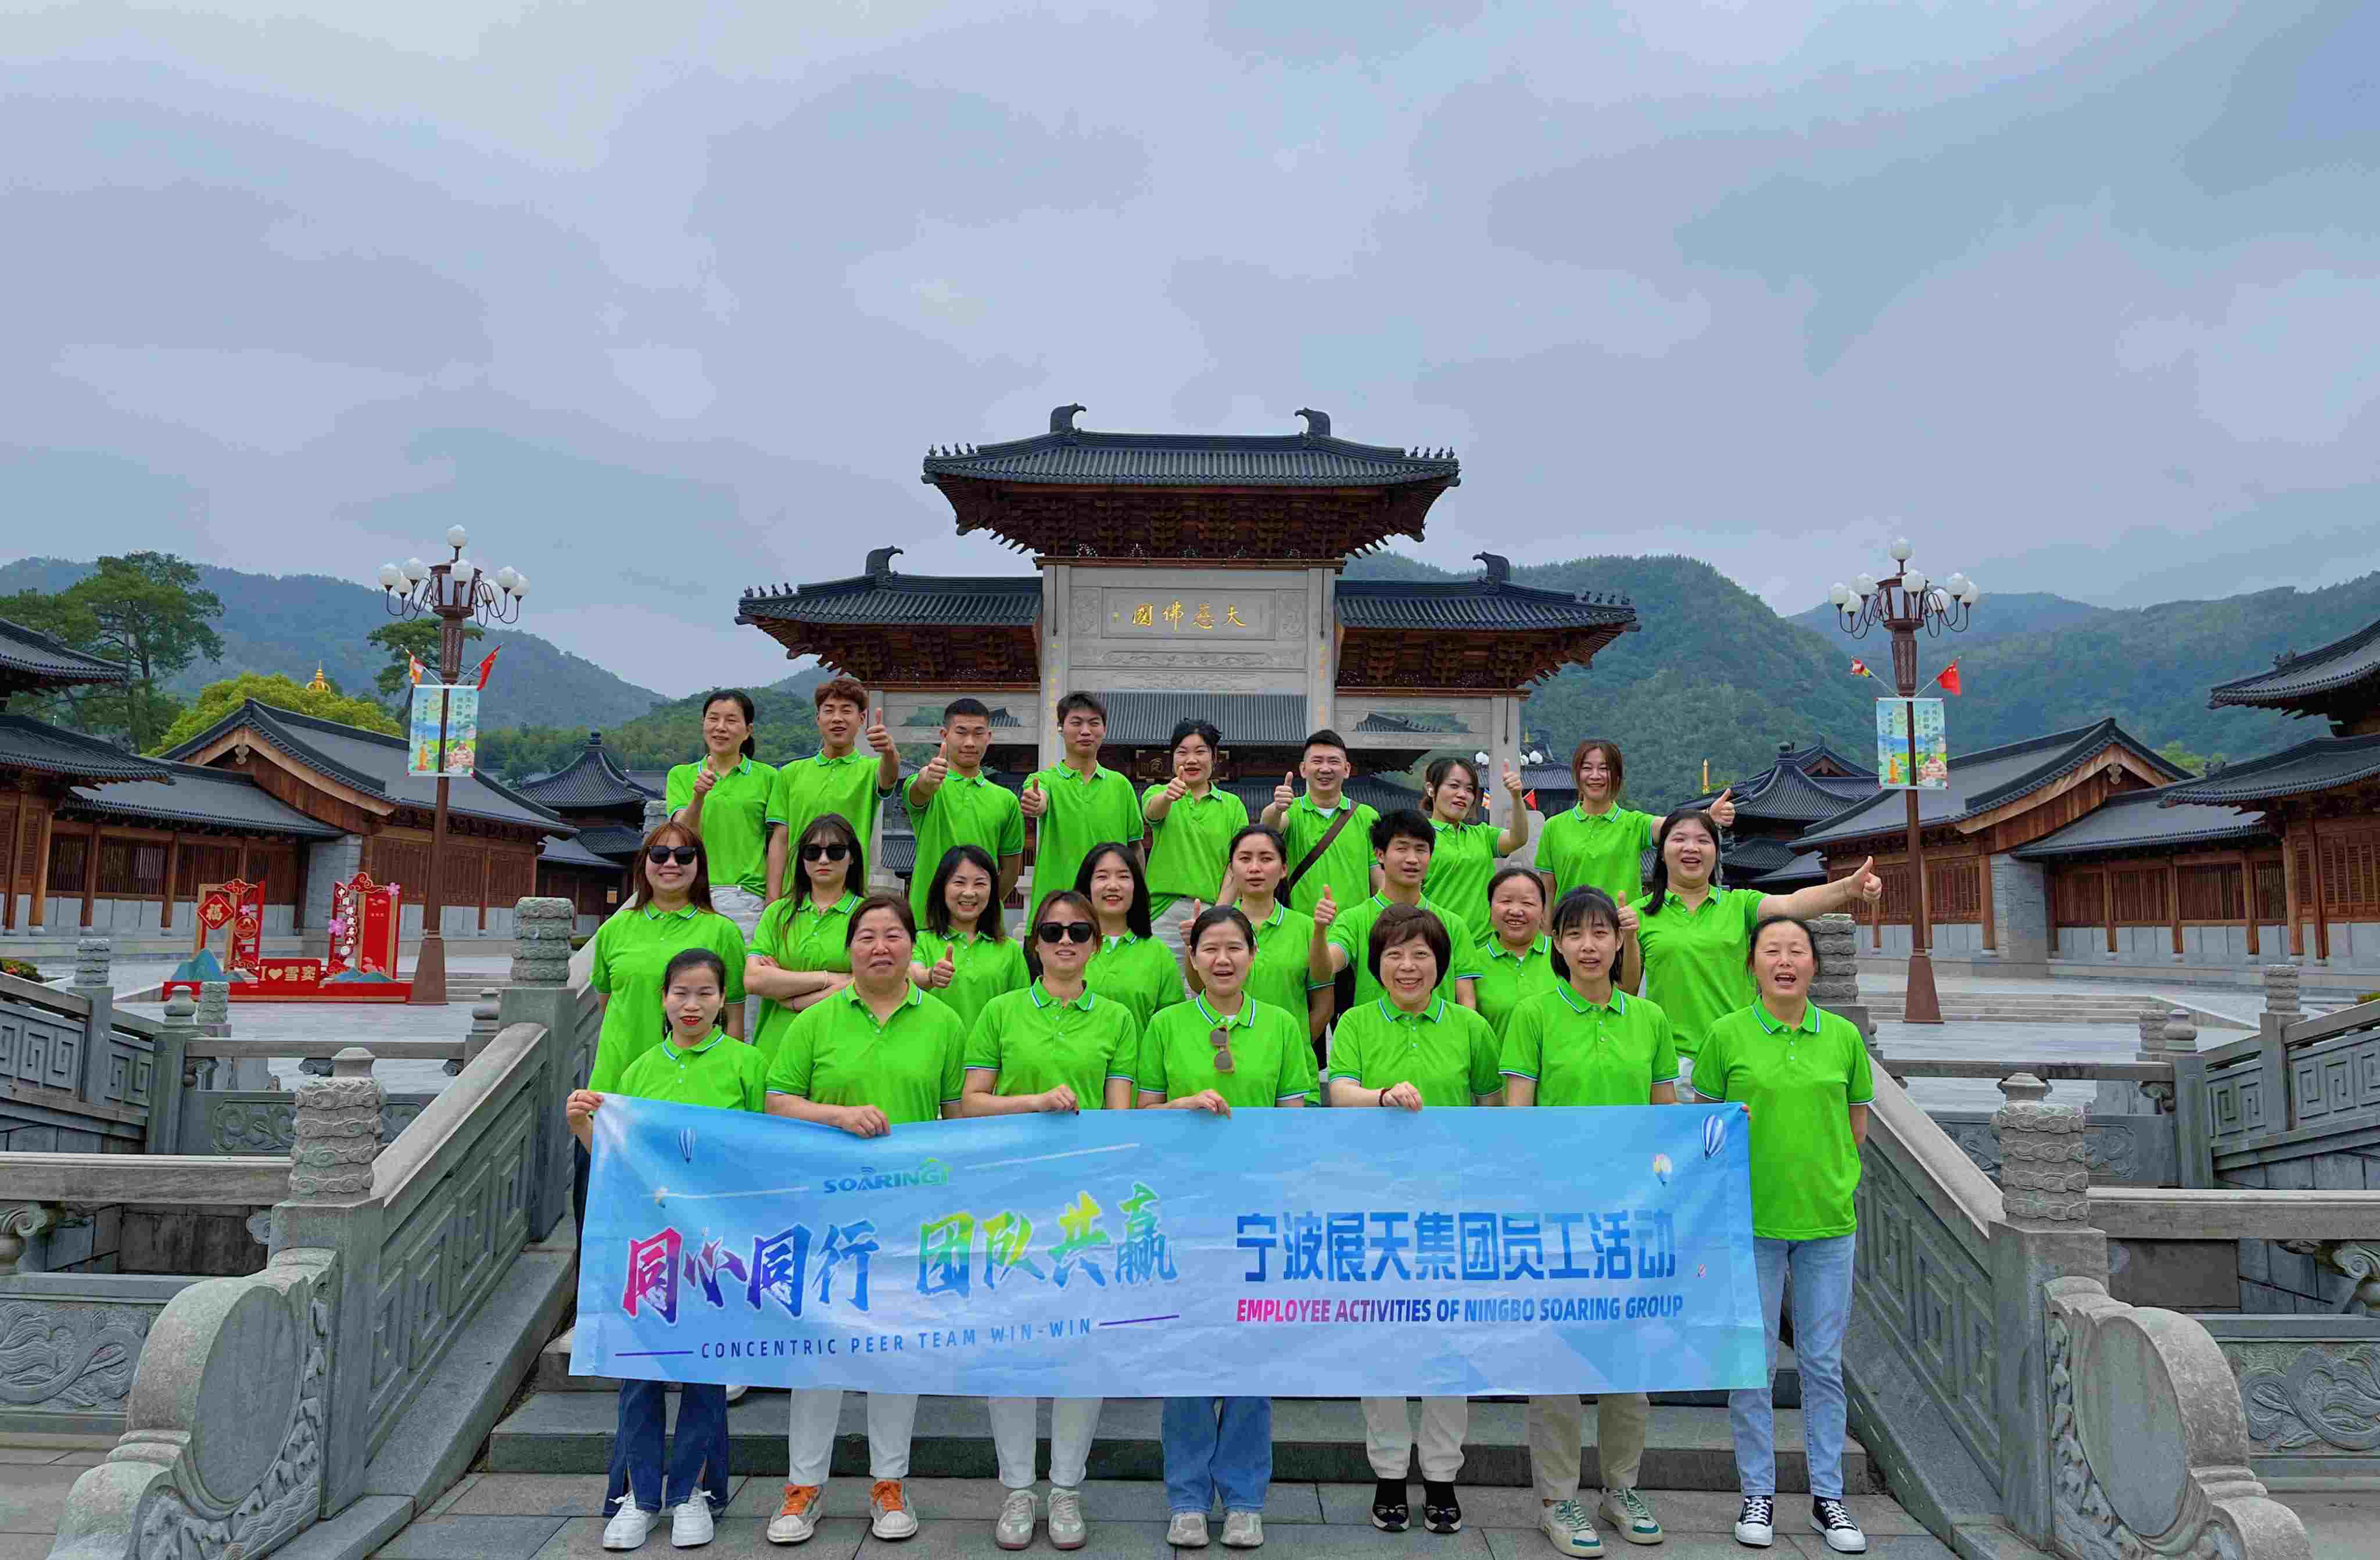 Ningbo Soaring| May 20th Company Activity In Xikou Scenic spot